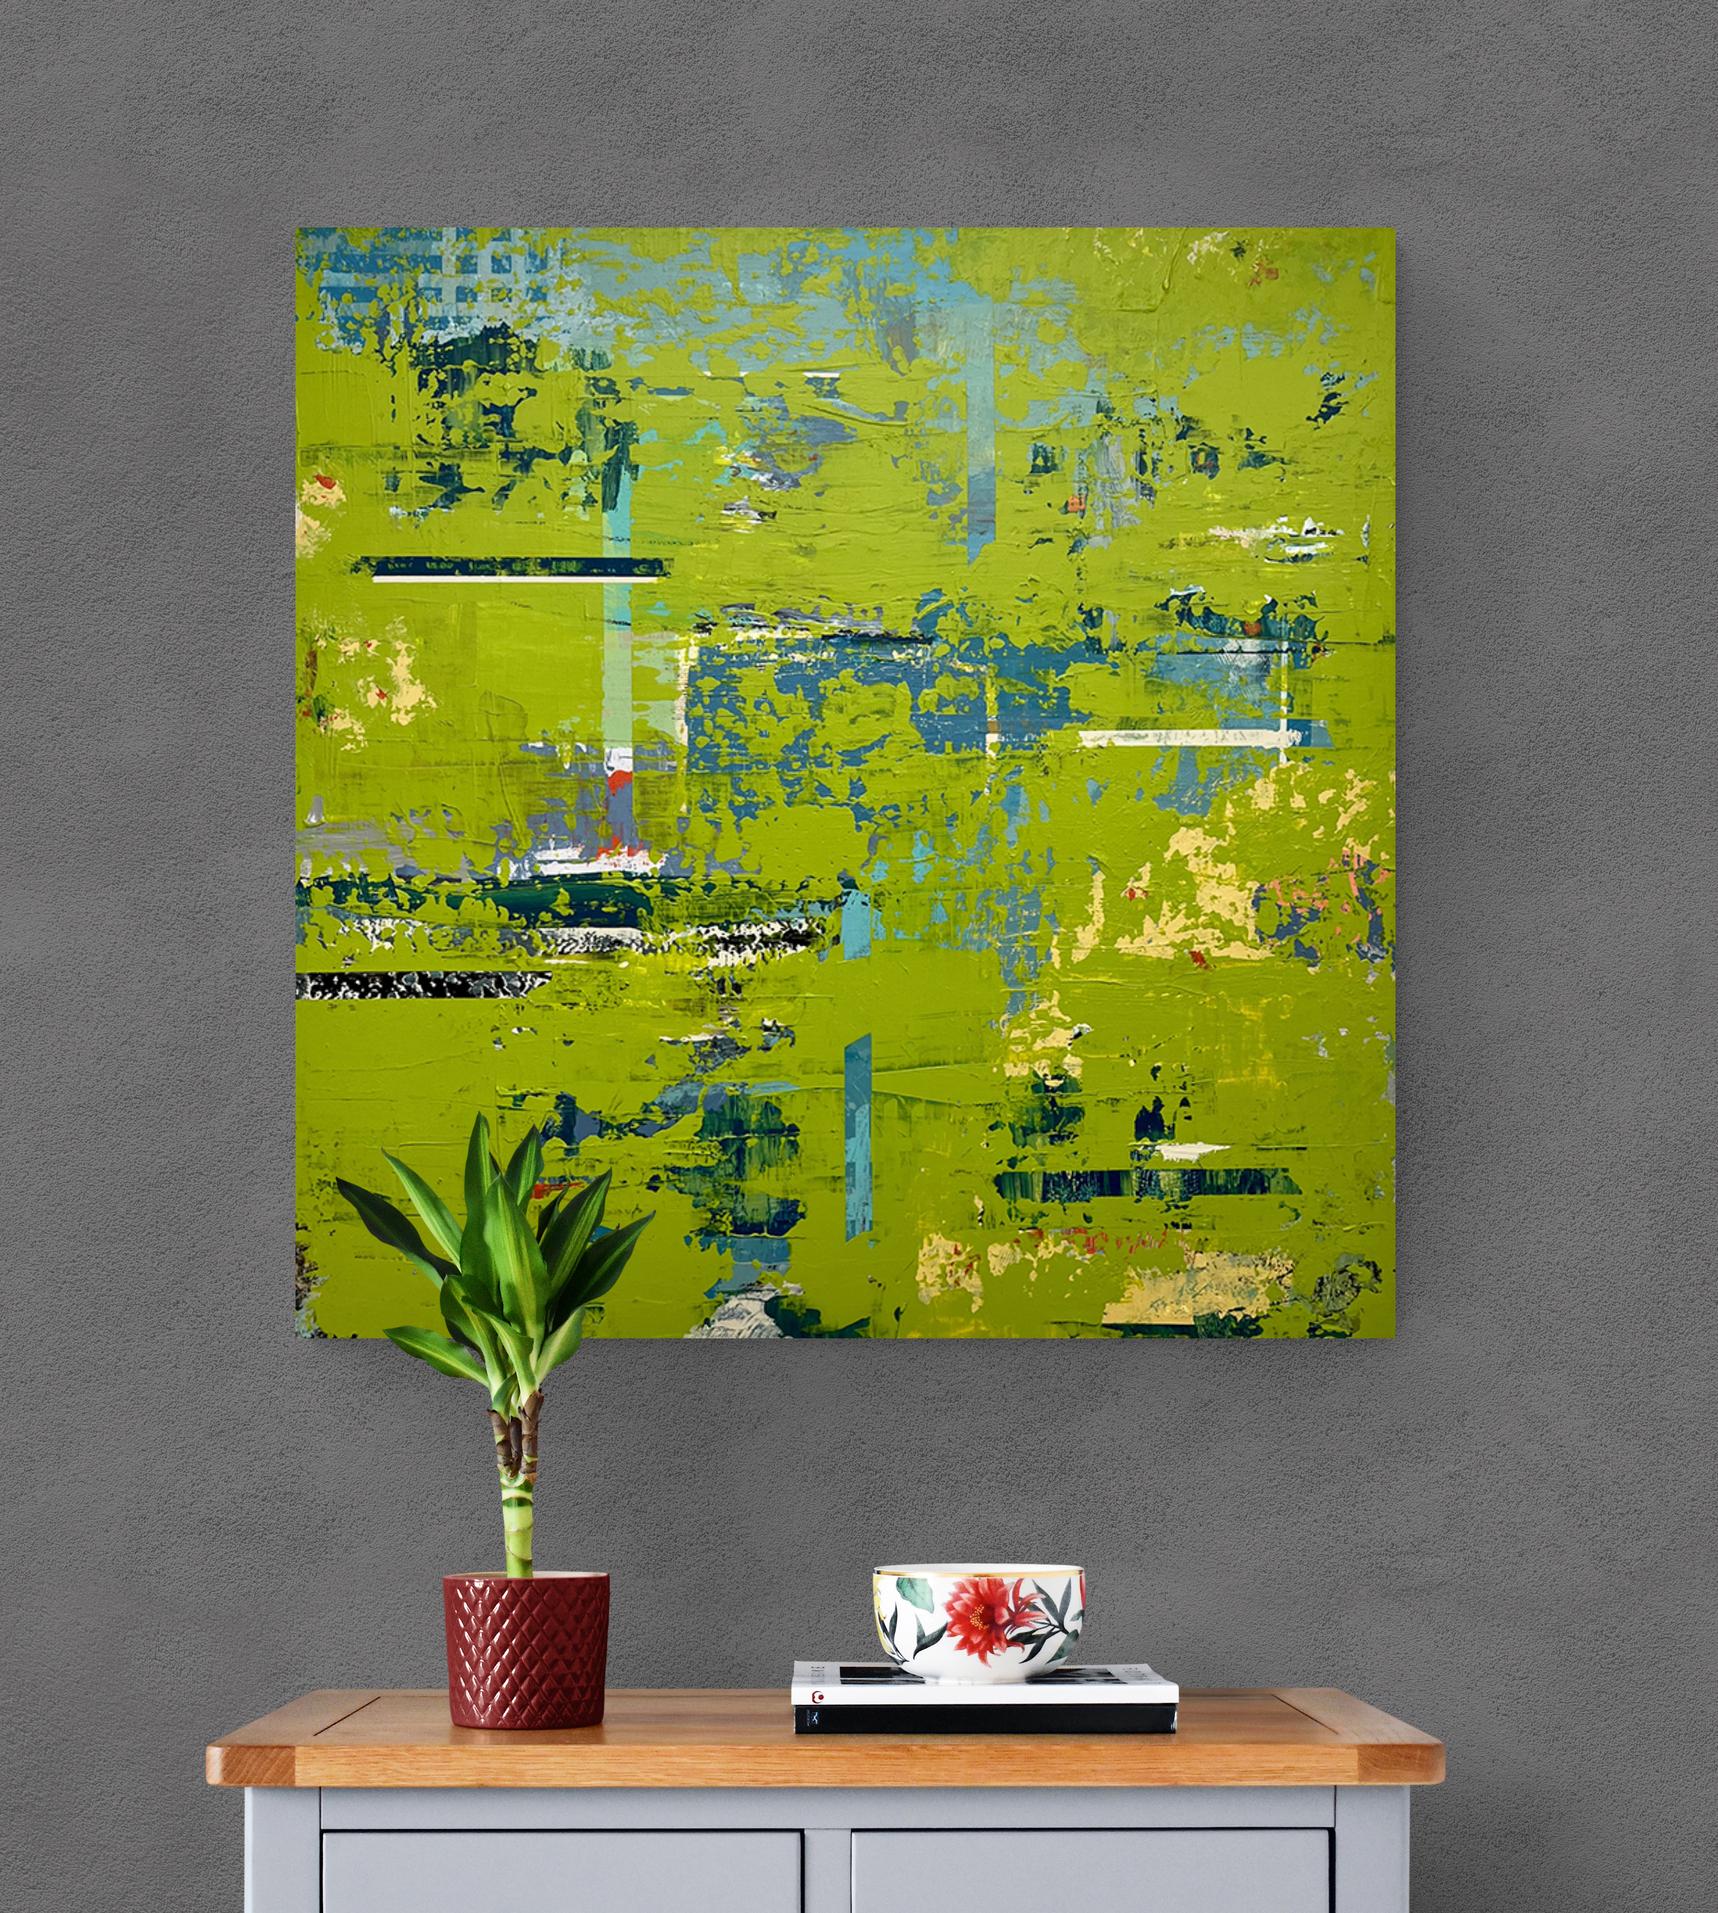 Großes leuchtend grünes abstraktes Acrylgemälde auf Leinwand „ Finding Resonance“ (Zeitgenössisch), Mixed Media Art, von Dave Robertson